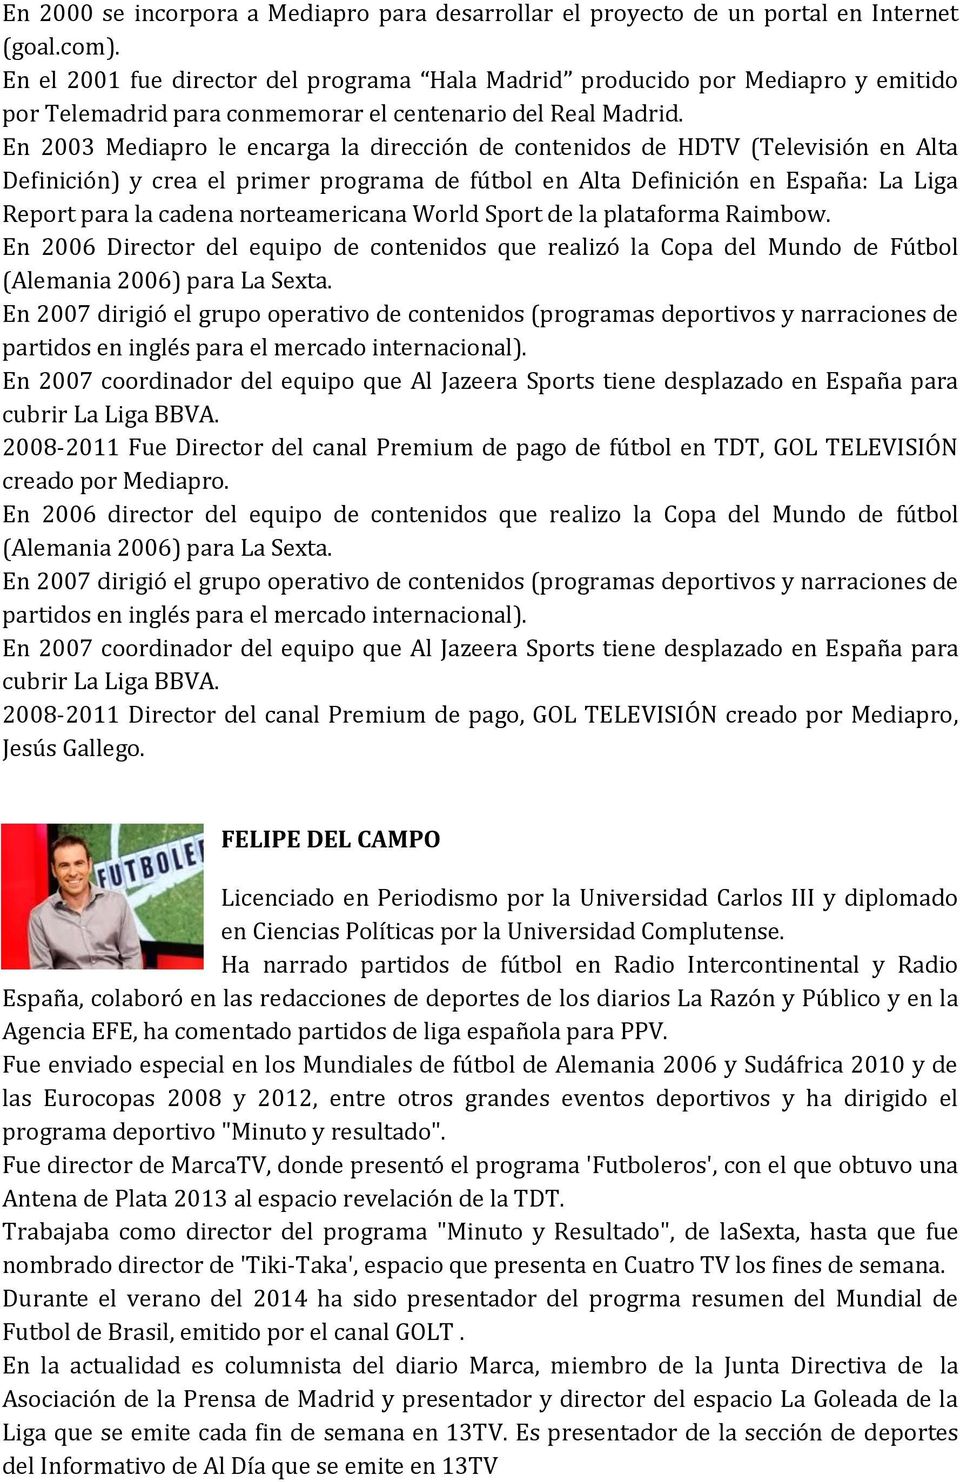 En 2003 Mediapro le encarga la dirección de contenidos de HDTV (Televisión en Alta Definición) y crea el primer programa de fútbol en Alta Definición en España: La Liga Report para la cadena